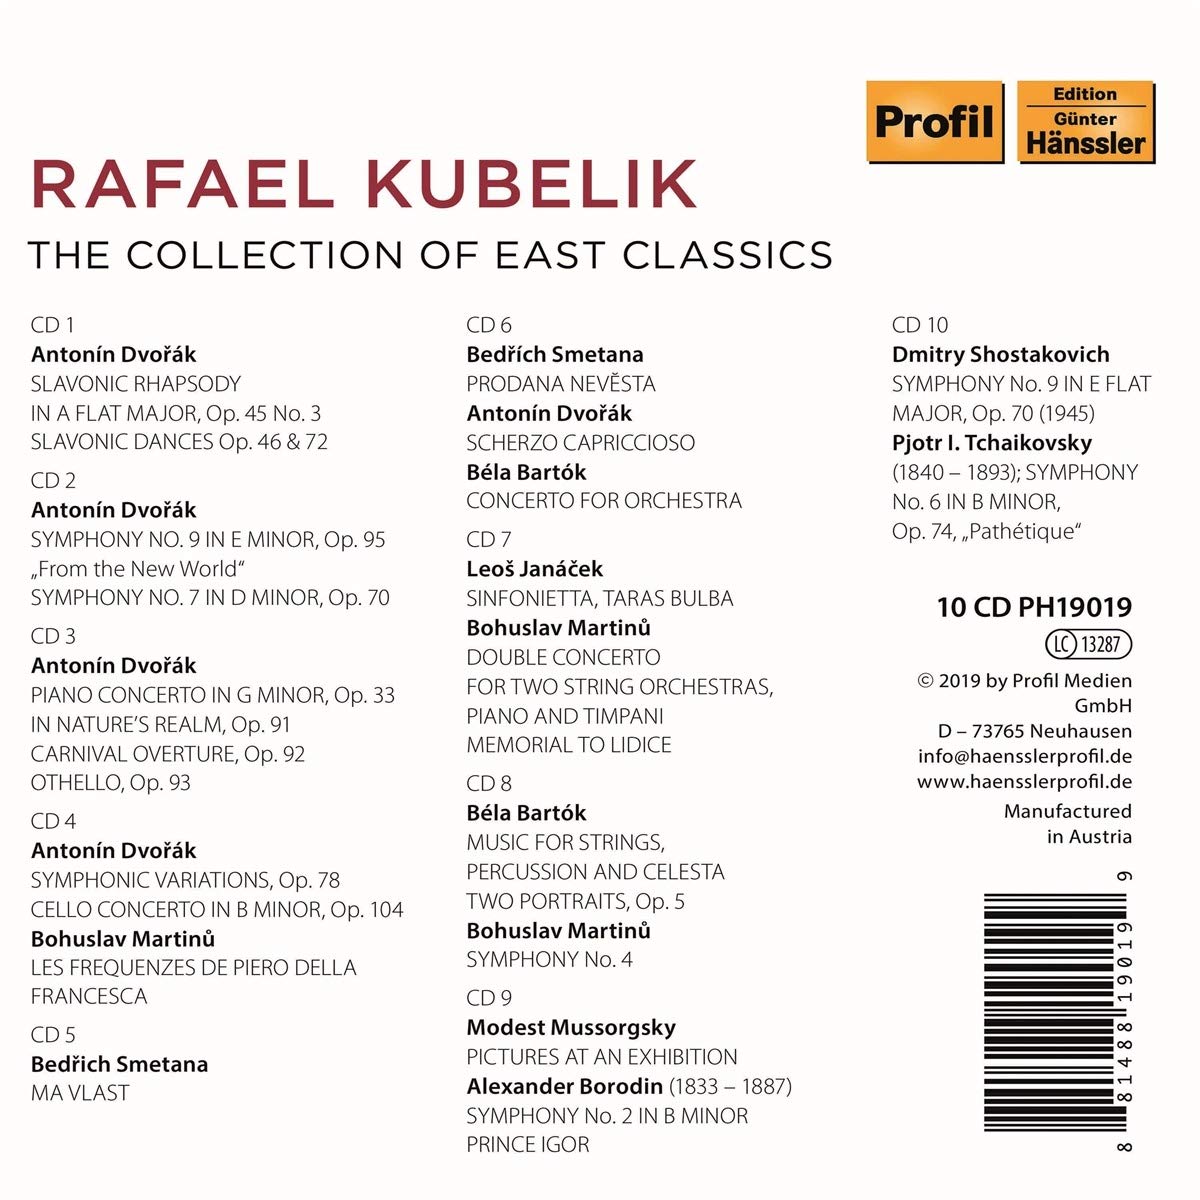 라파엘 쿠벨릭 초기 레코딩 모음집 (Rafael Kubelik - The Collection of East Classics)